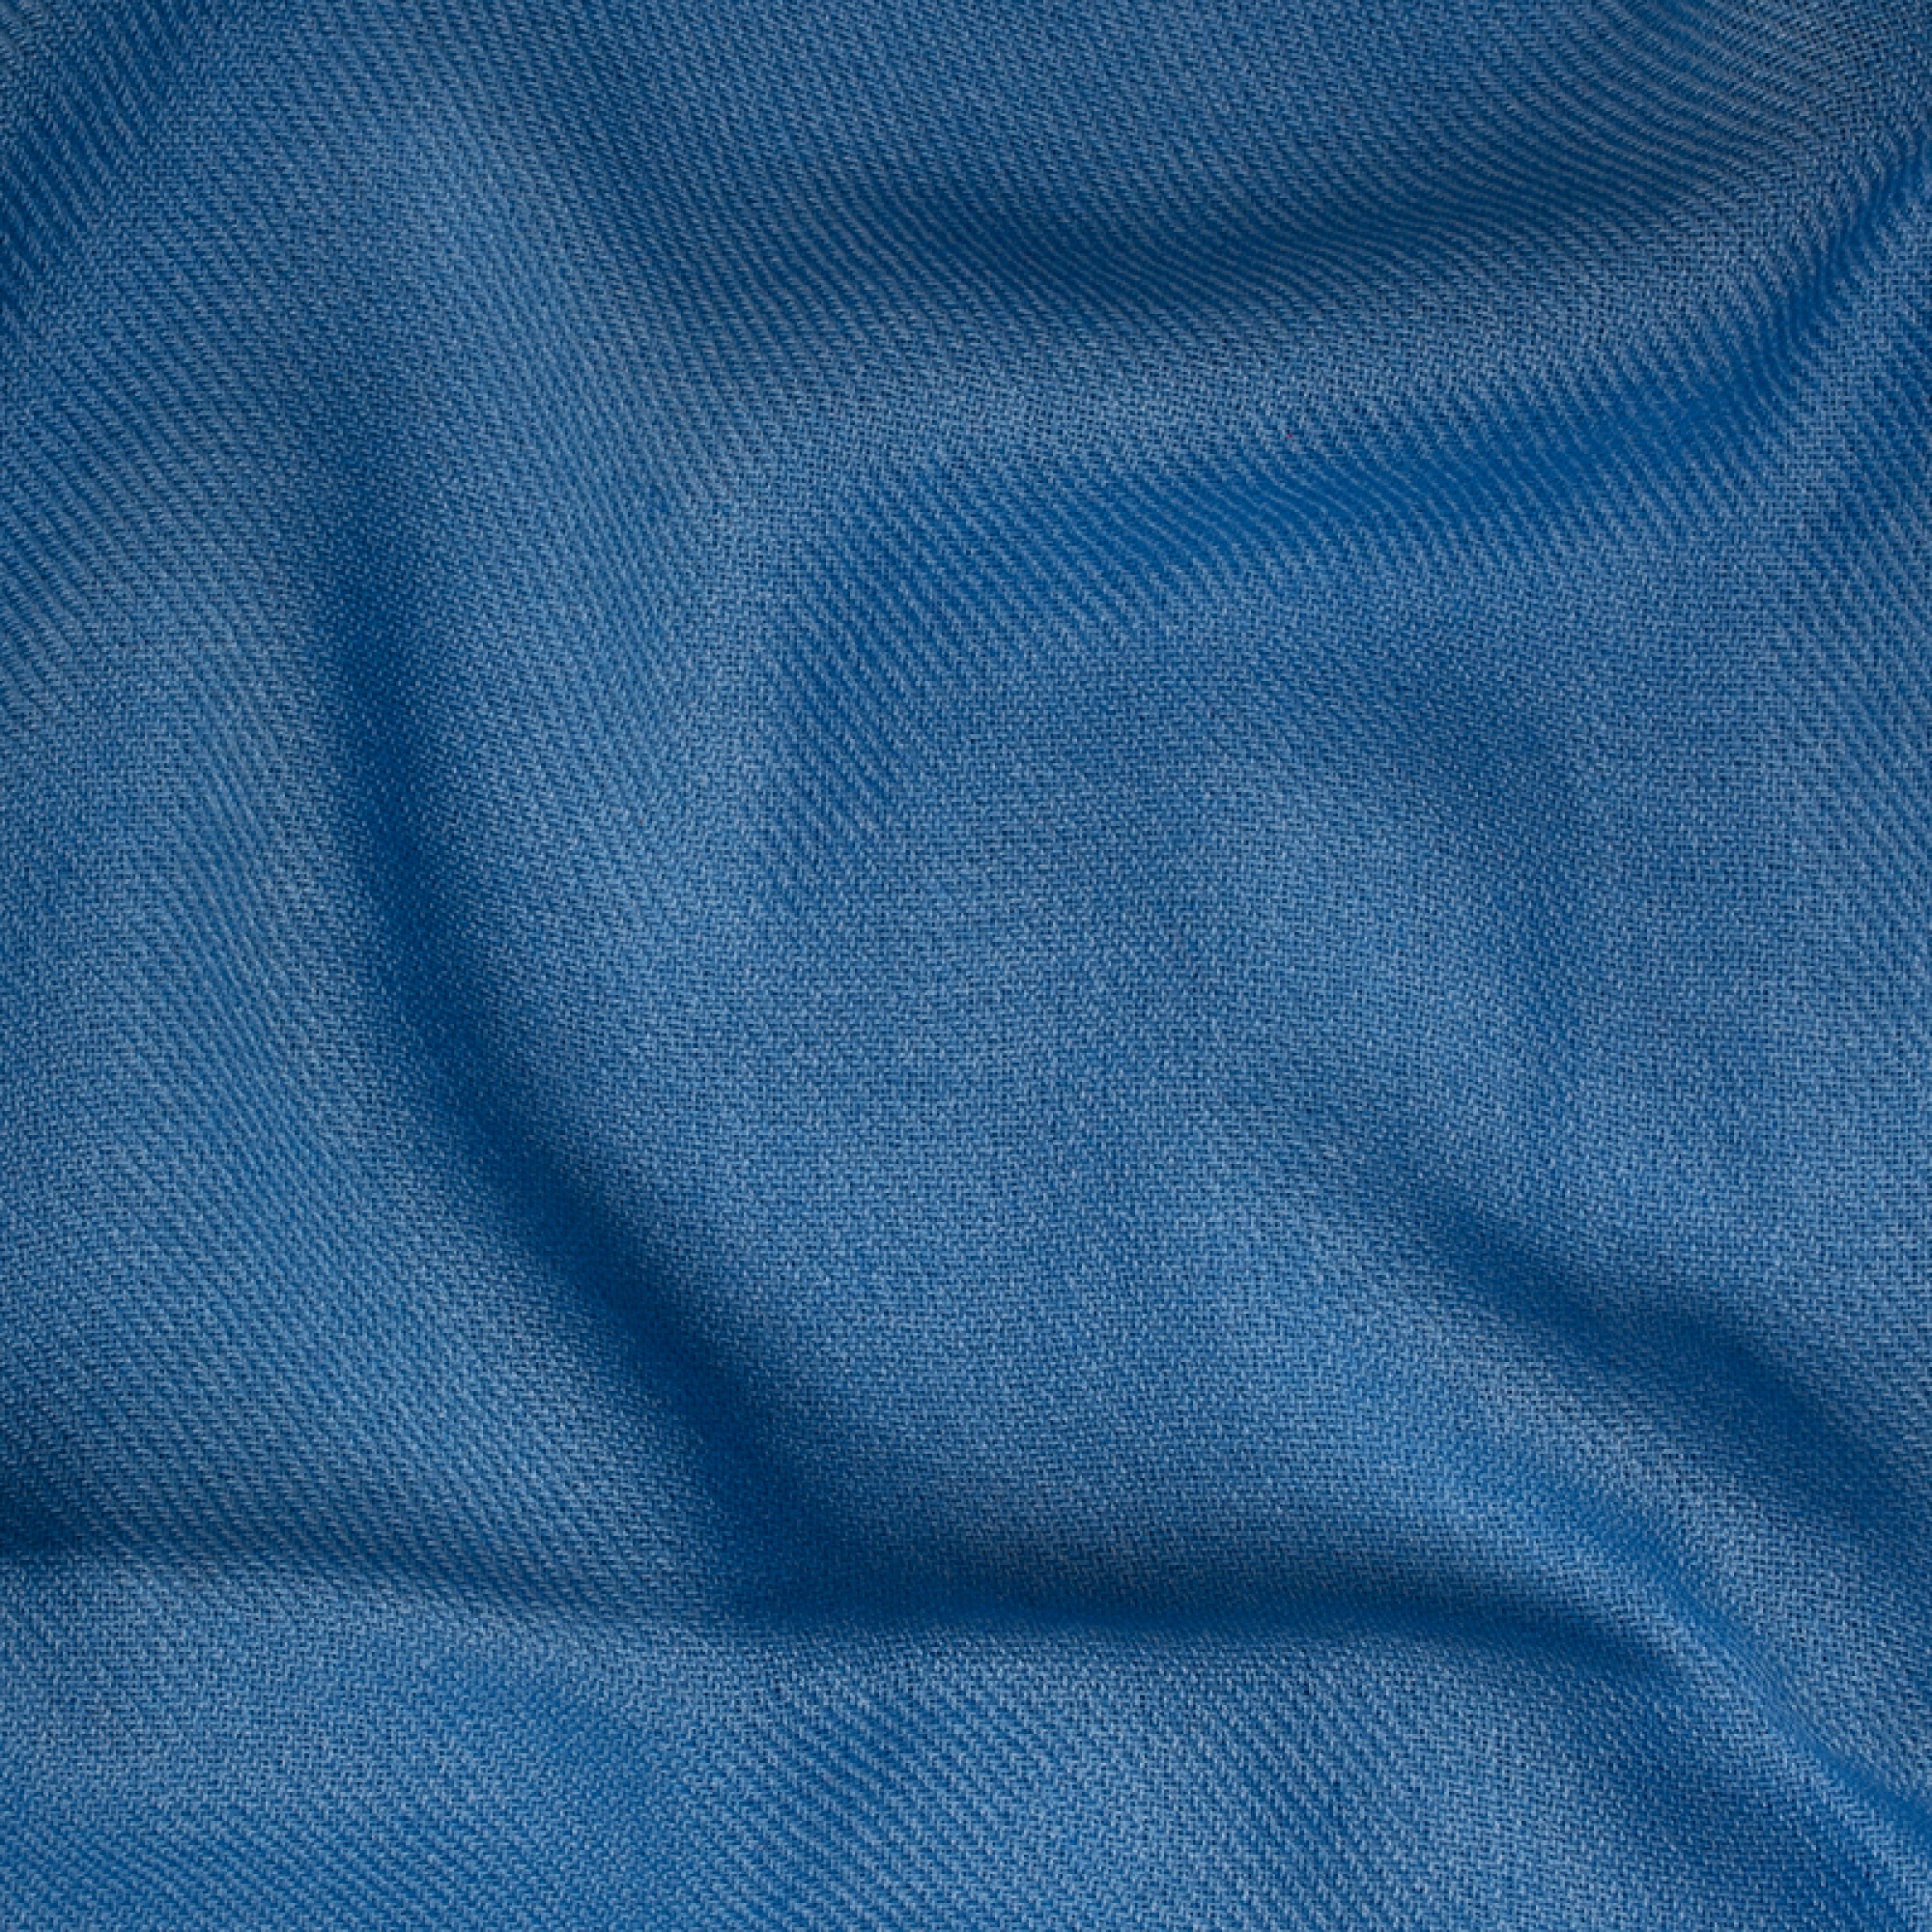 Cashmere accessories blanket toodoo plain xl 240 x 260 marina 240 x 260 cm